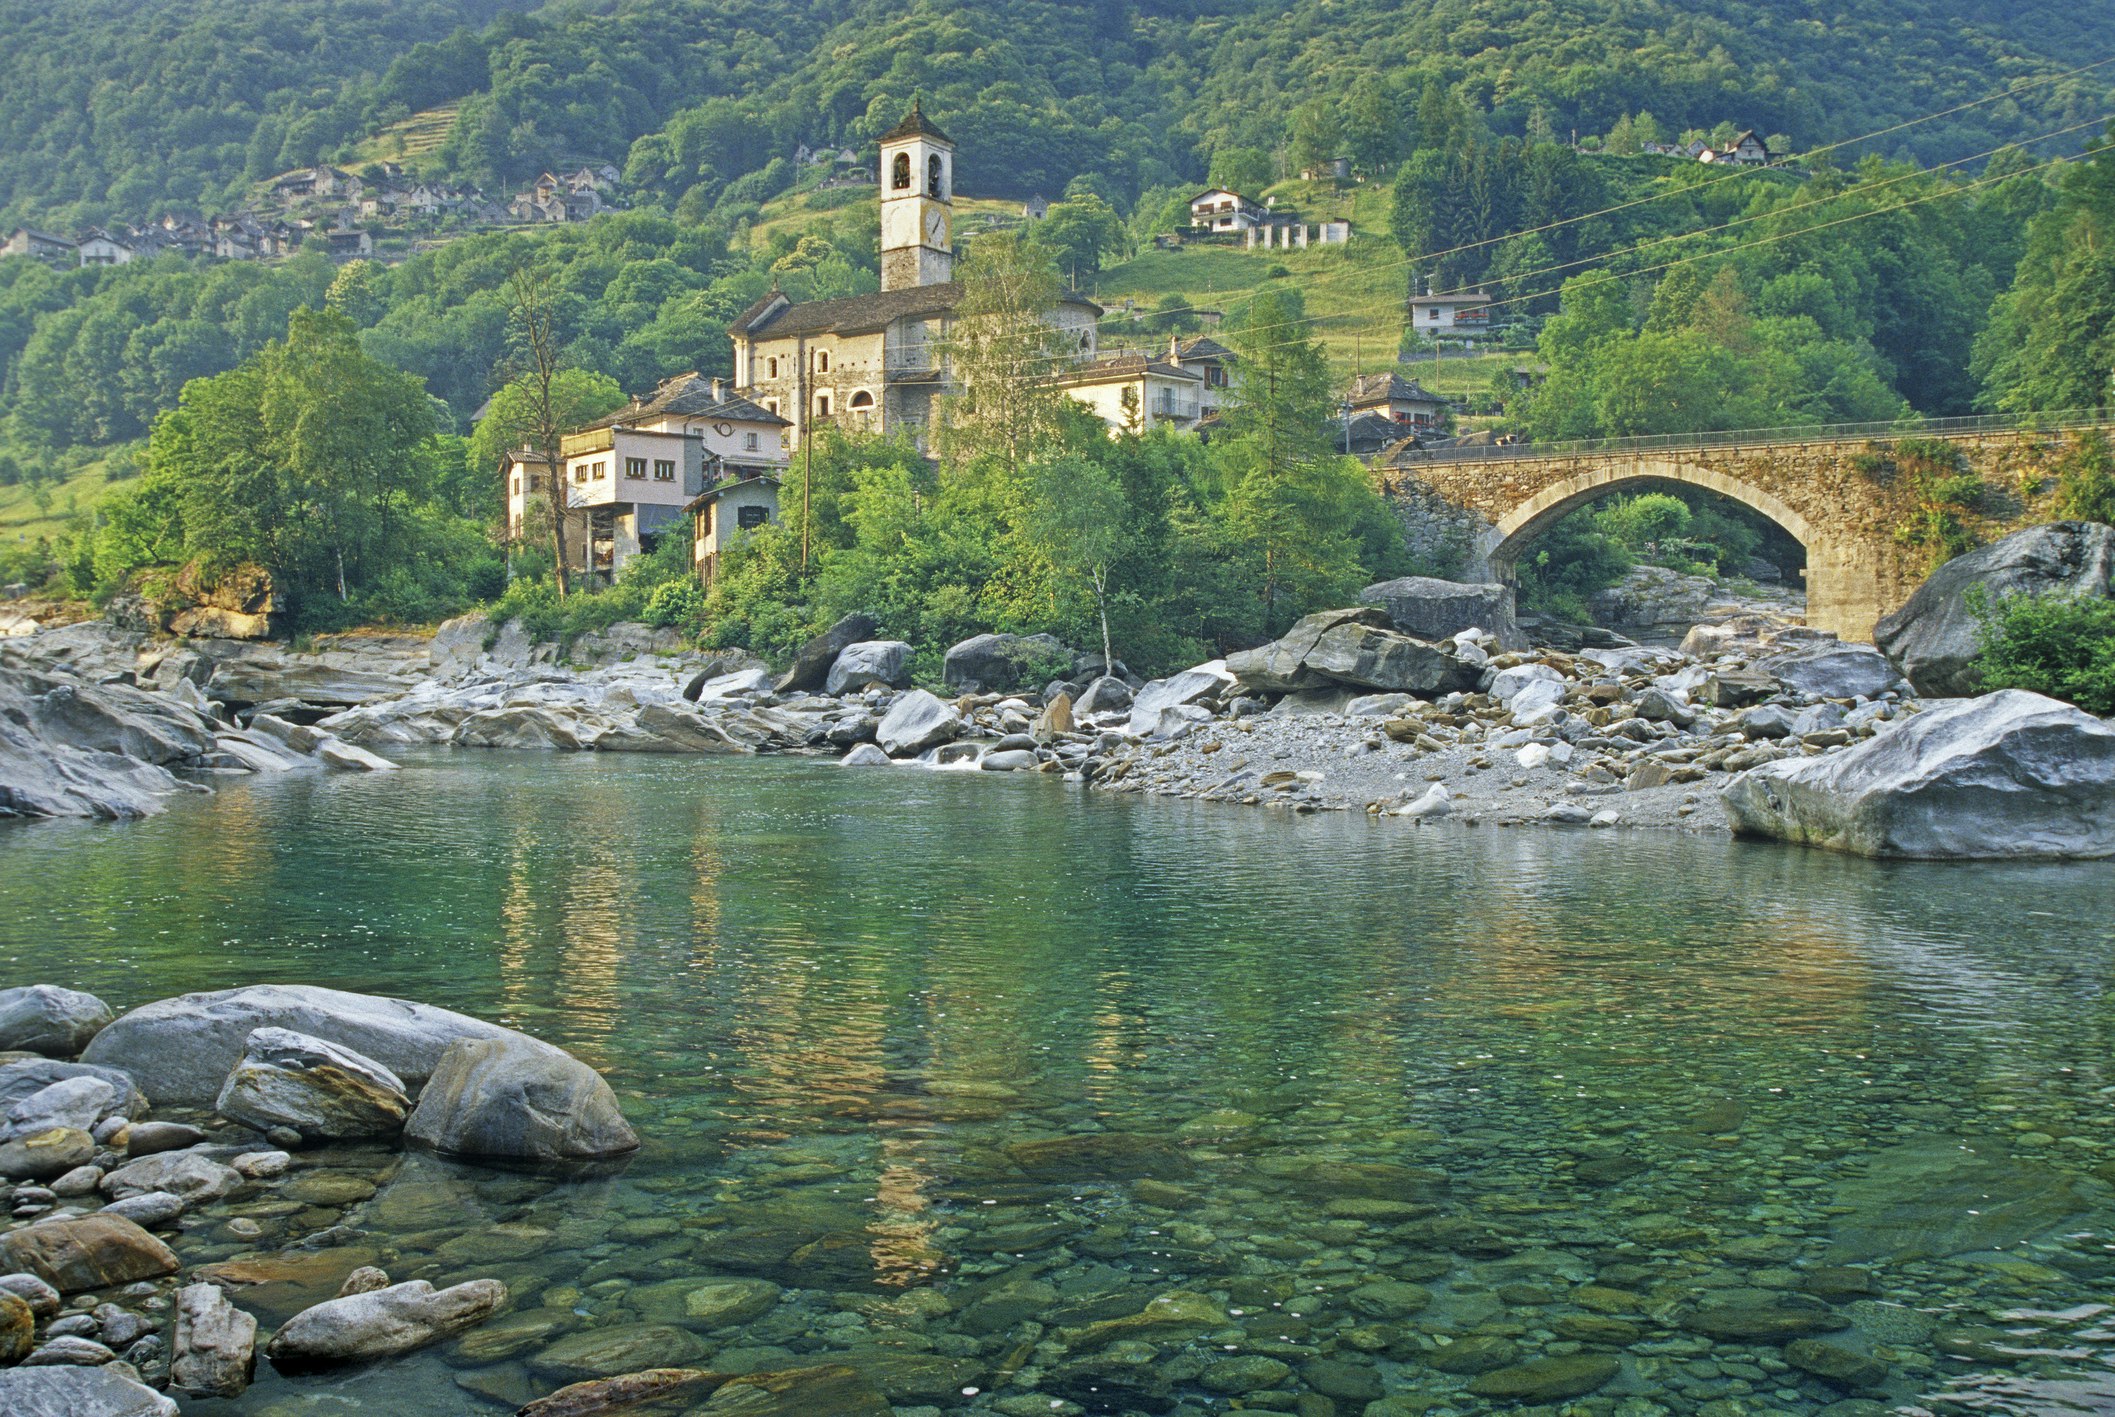 The village of Lavertezzo.